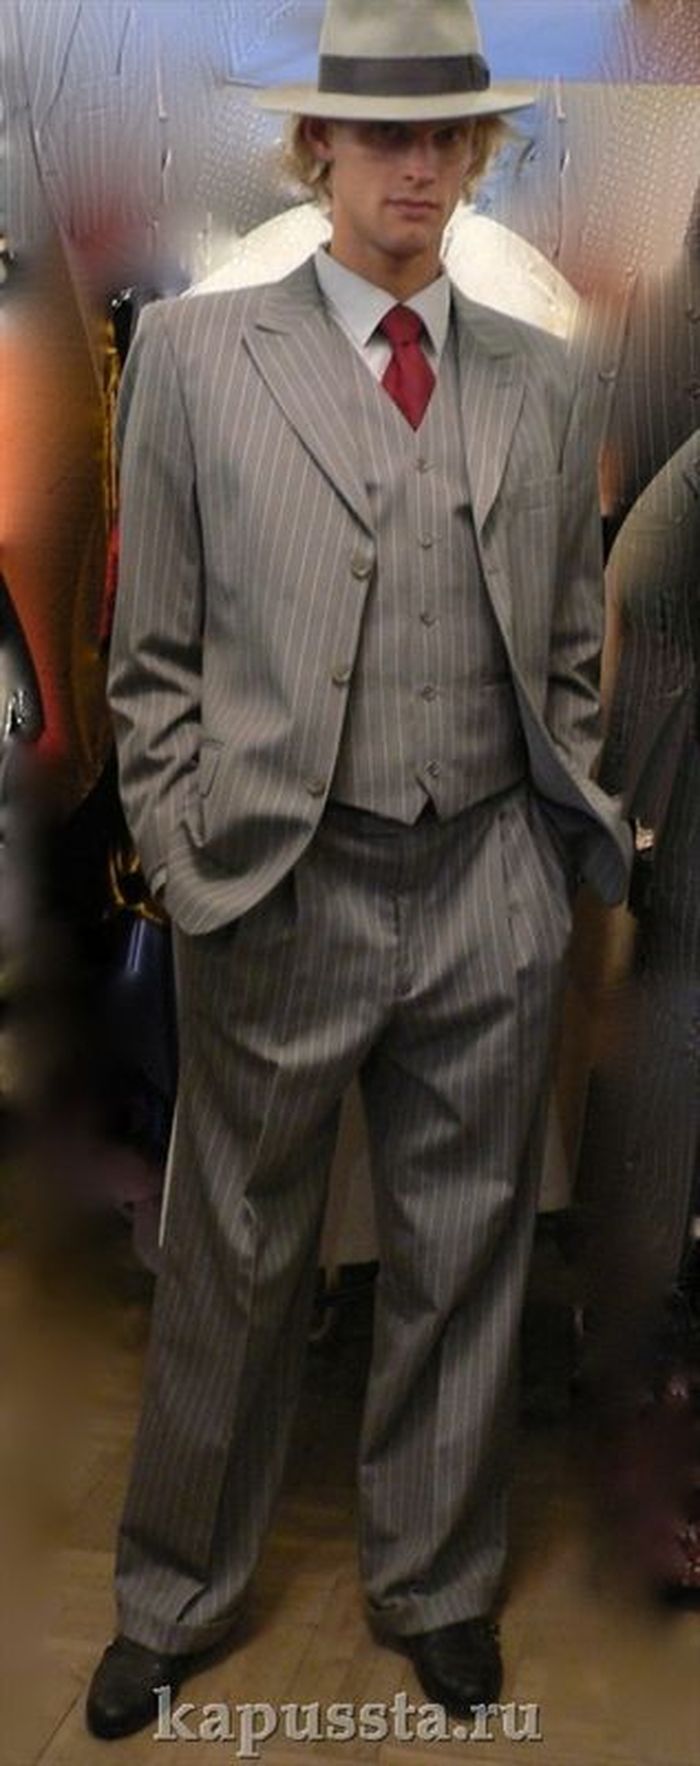 Гангстерский серый костюм  с шляпой